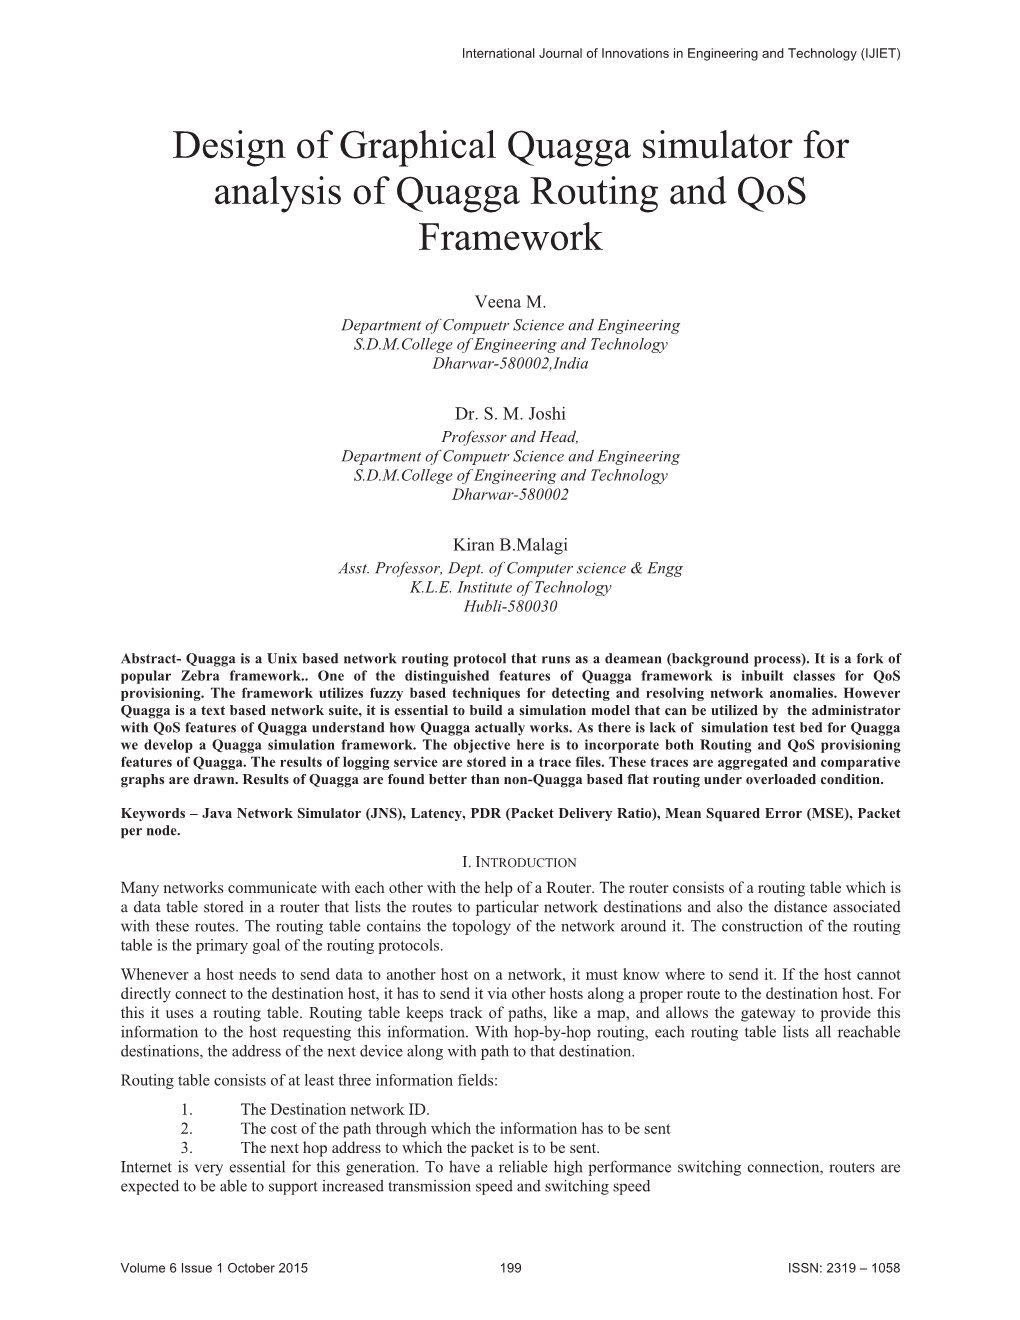 Design of Graphical Quagga Simulator for Analysis of Quagga Routing and Qos Framework